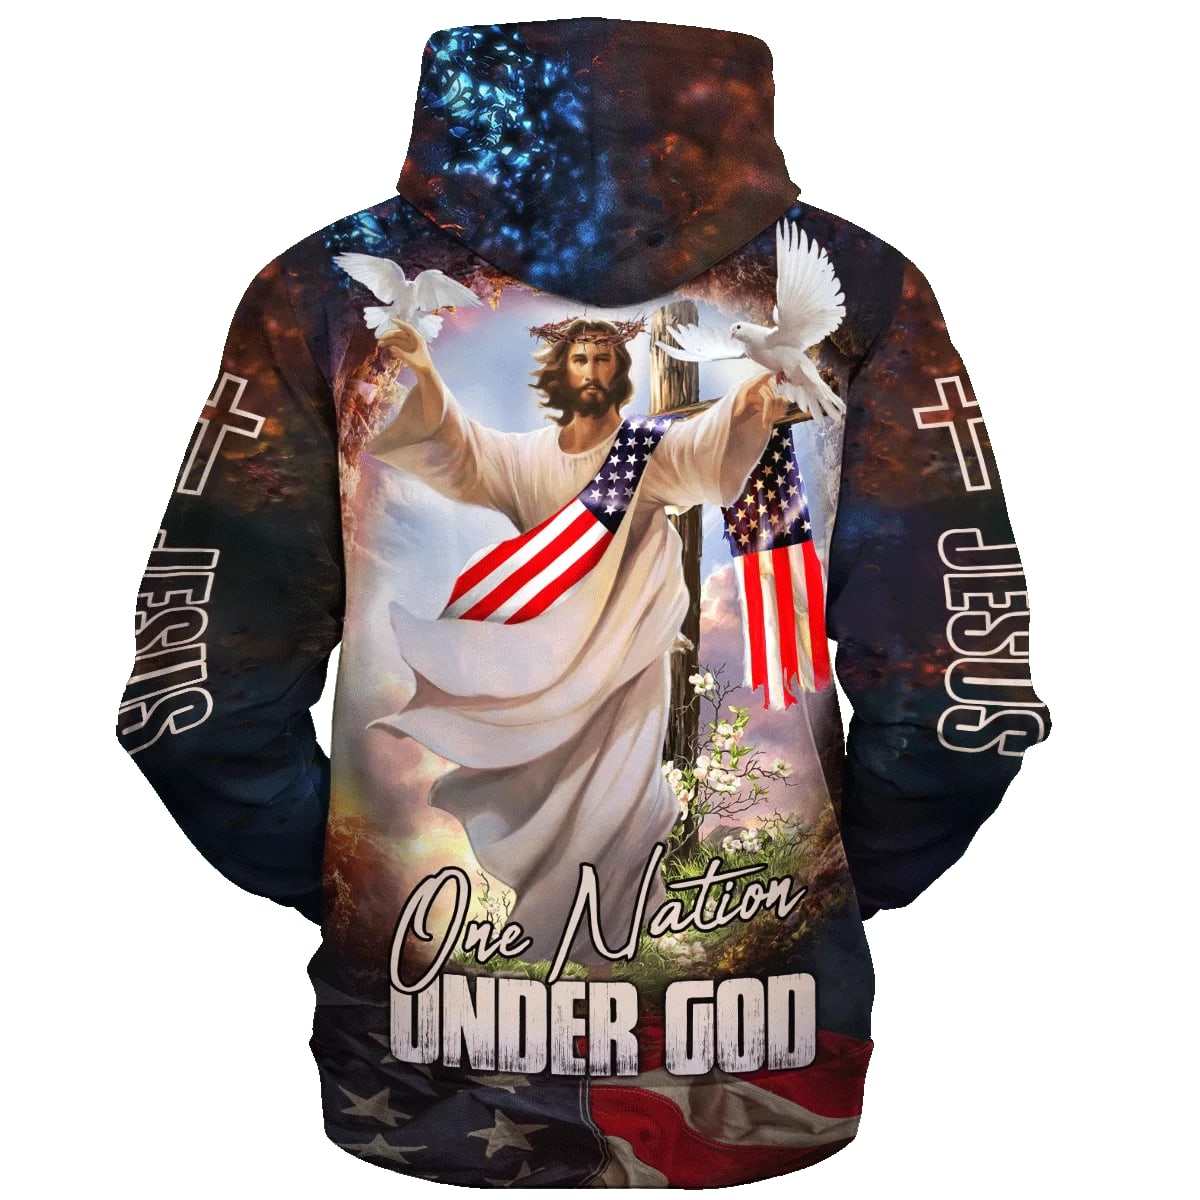 One Nation Under God - Jesus Dove 3d Hoodies - Jesus Hoodie - Men & Women Christian Hoodie - 3D Printed Hoodie